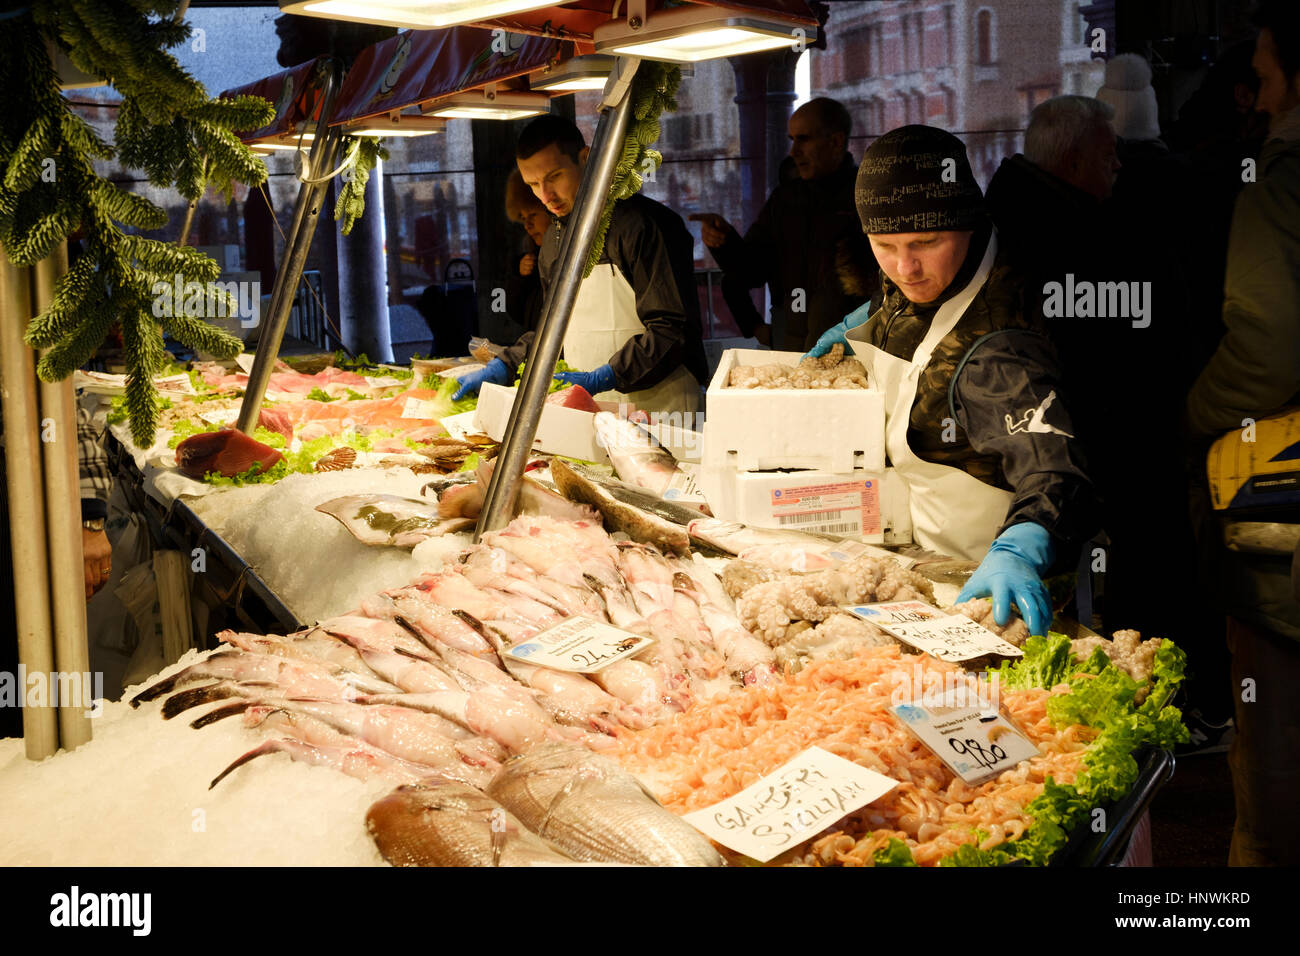 Mercado de Rialto, le marché du Rialto, Venise, Italie. Venise les plus important marché alimentaire Banque D'Images